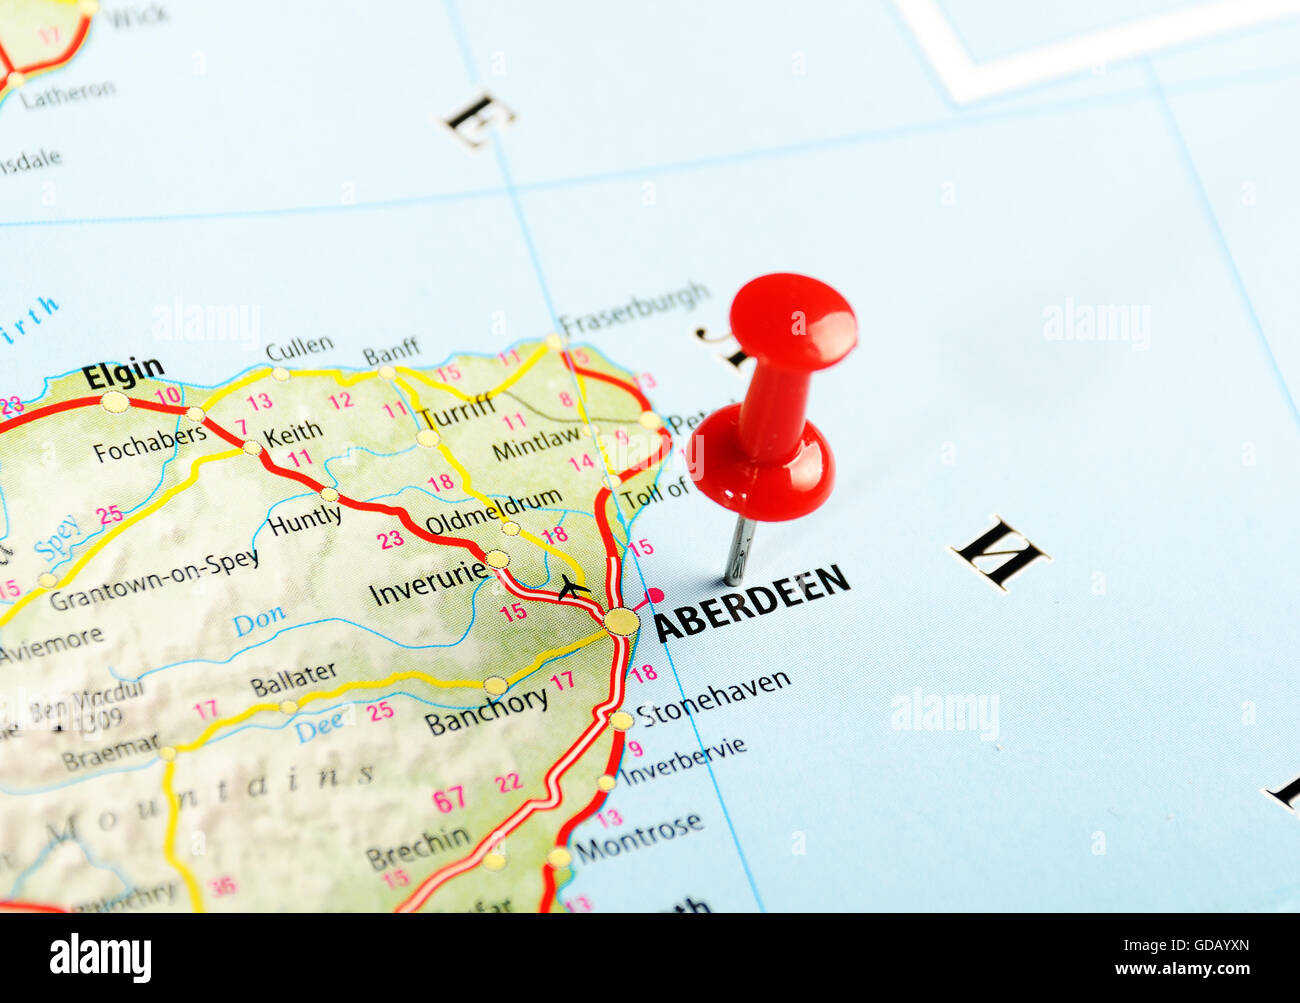 Aberdeen Scotland, Großbritannien Karte und Pin - Reisekonzept Stockfoto